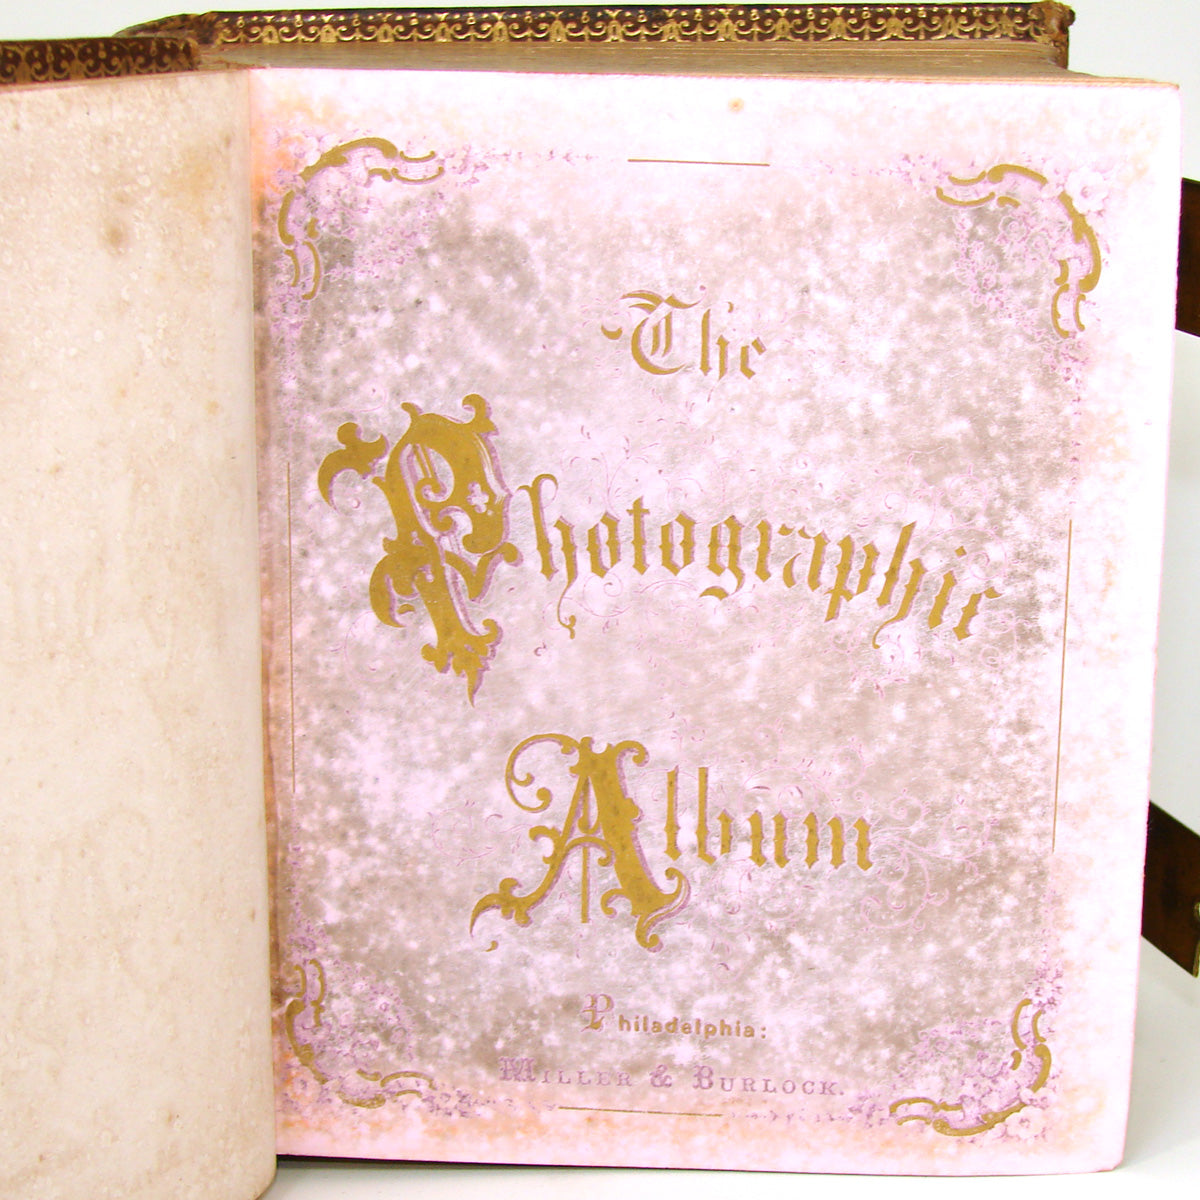 Antique Victorian Era Tooled Leather Carte d’Visite or Photo Album, Bronze Strap Clasps